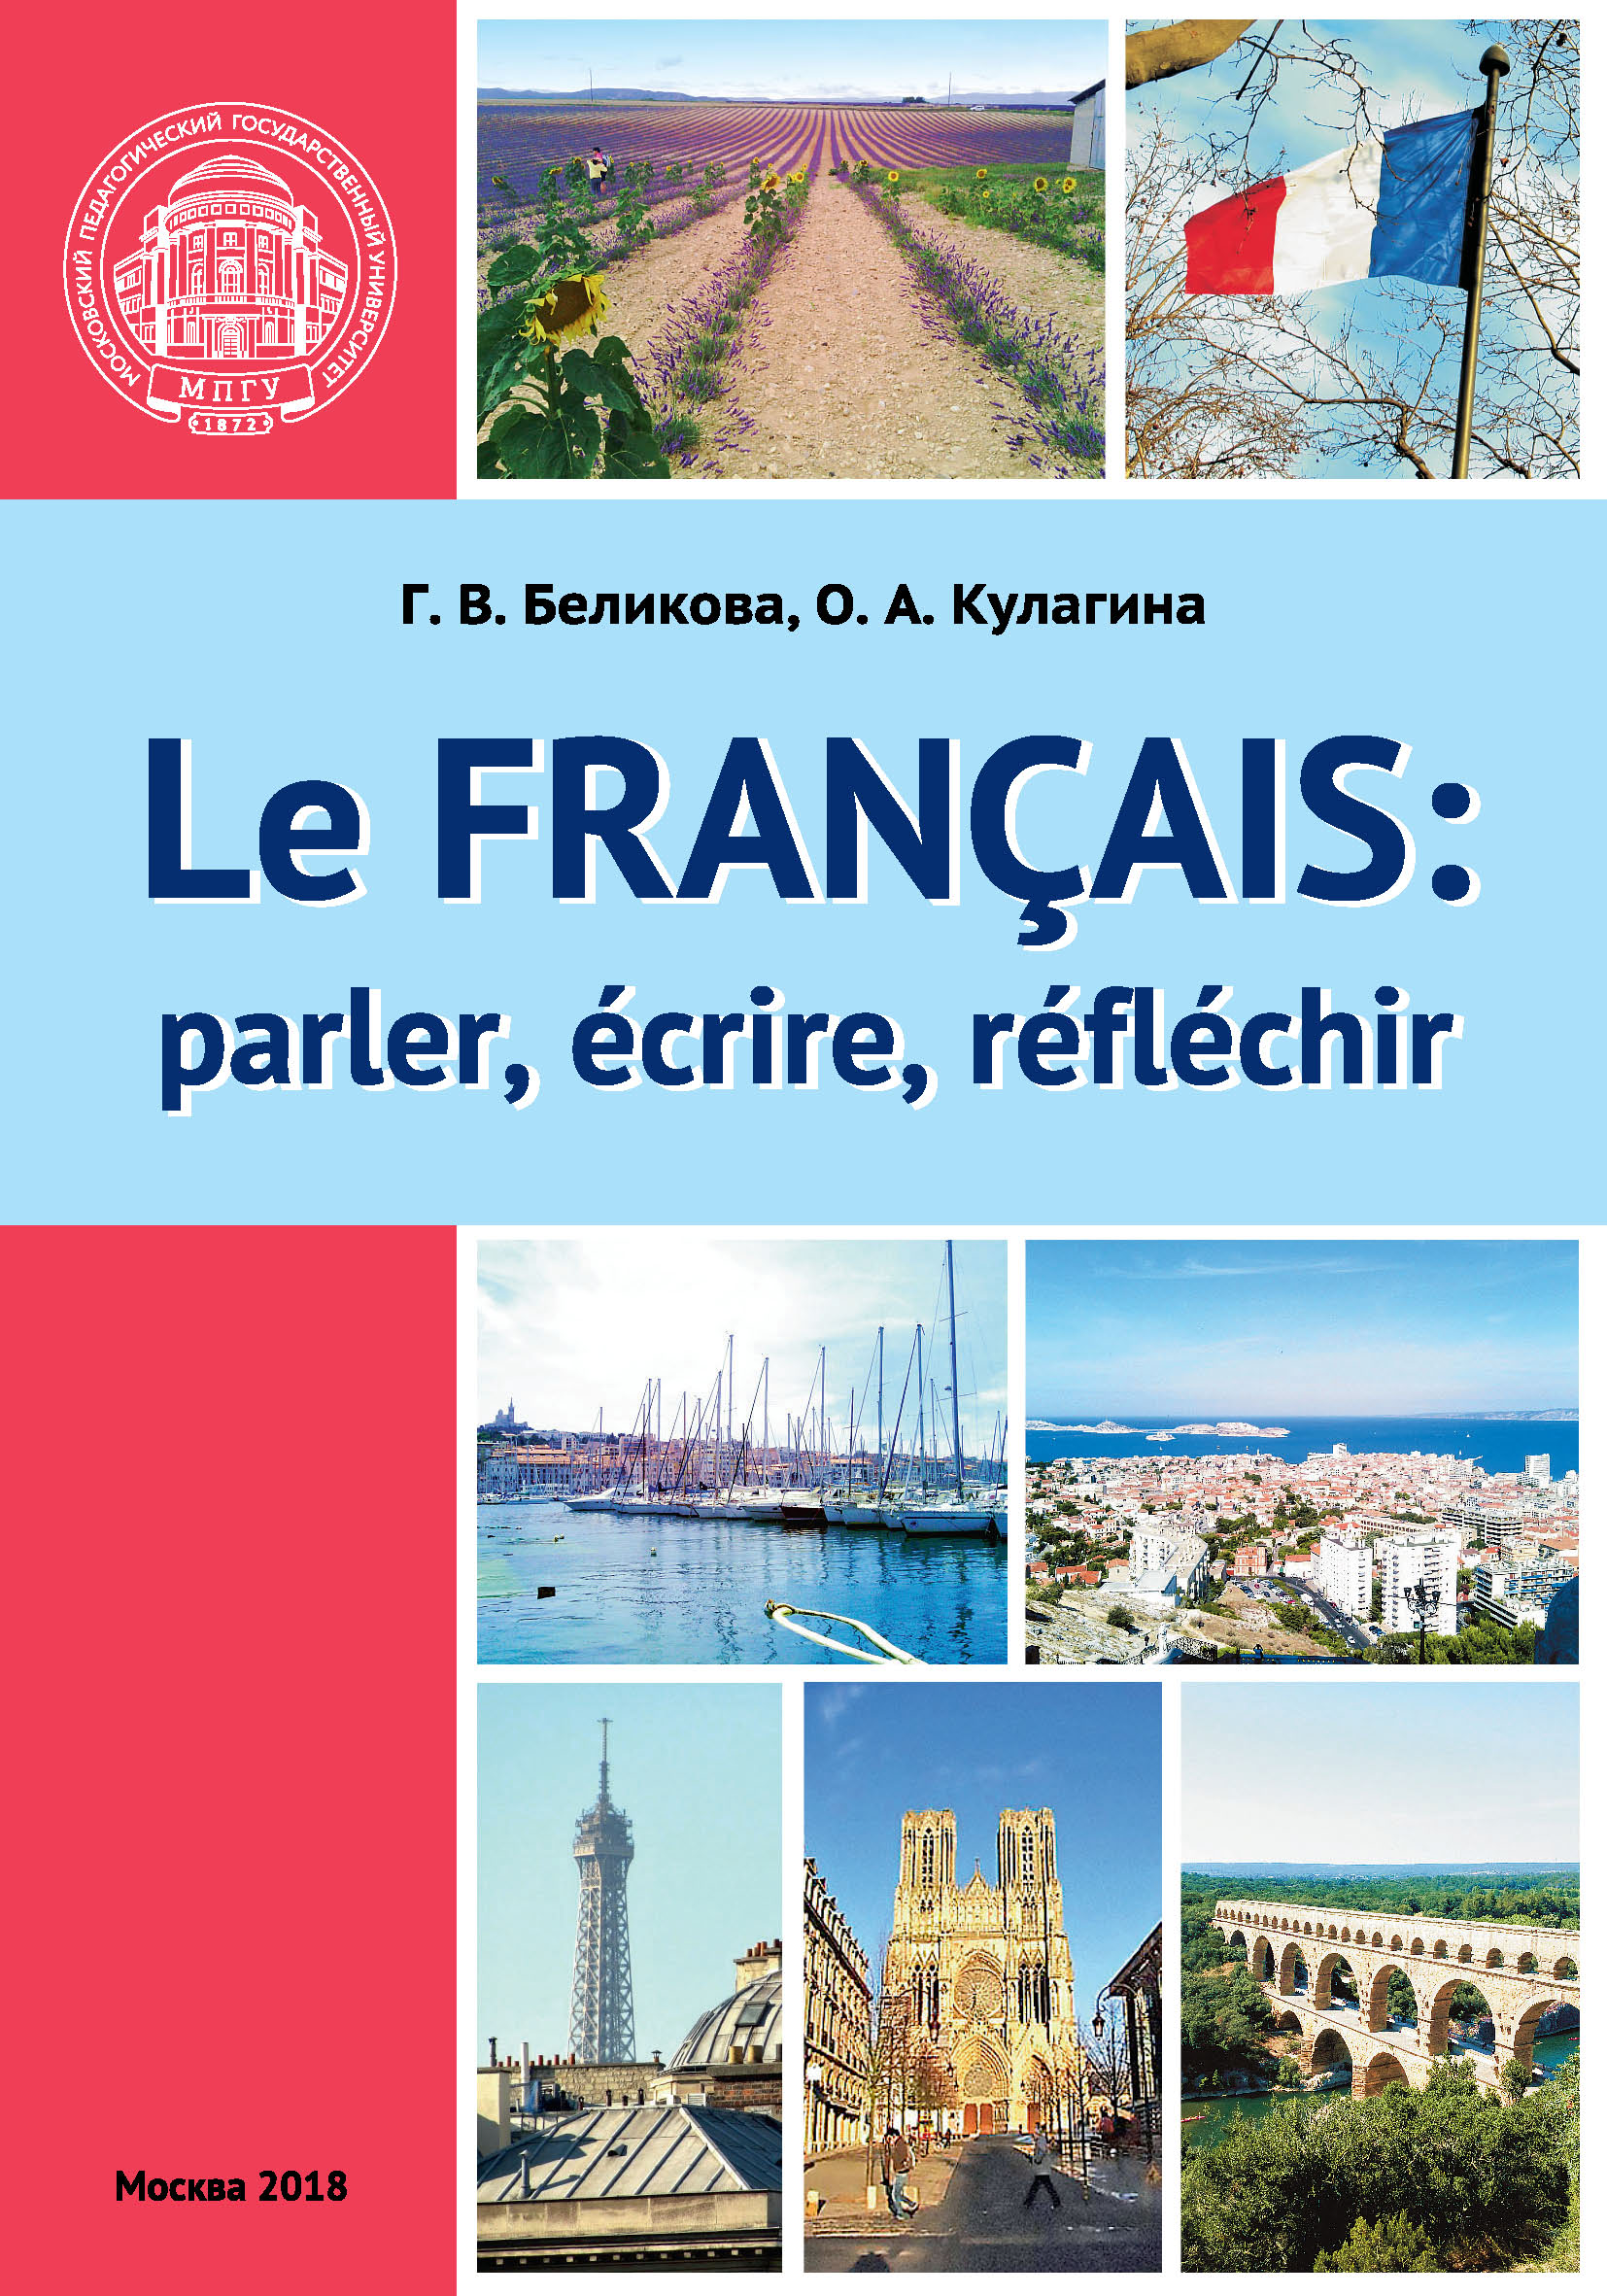 Французский язык: говорим, пишем, мыслим / Le Français: parler, écrire, réfléchir